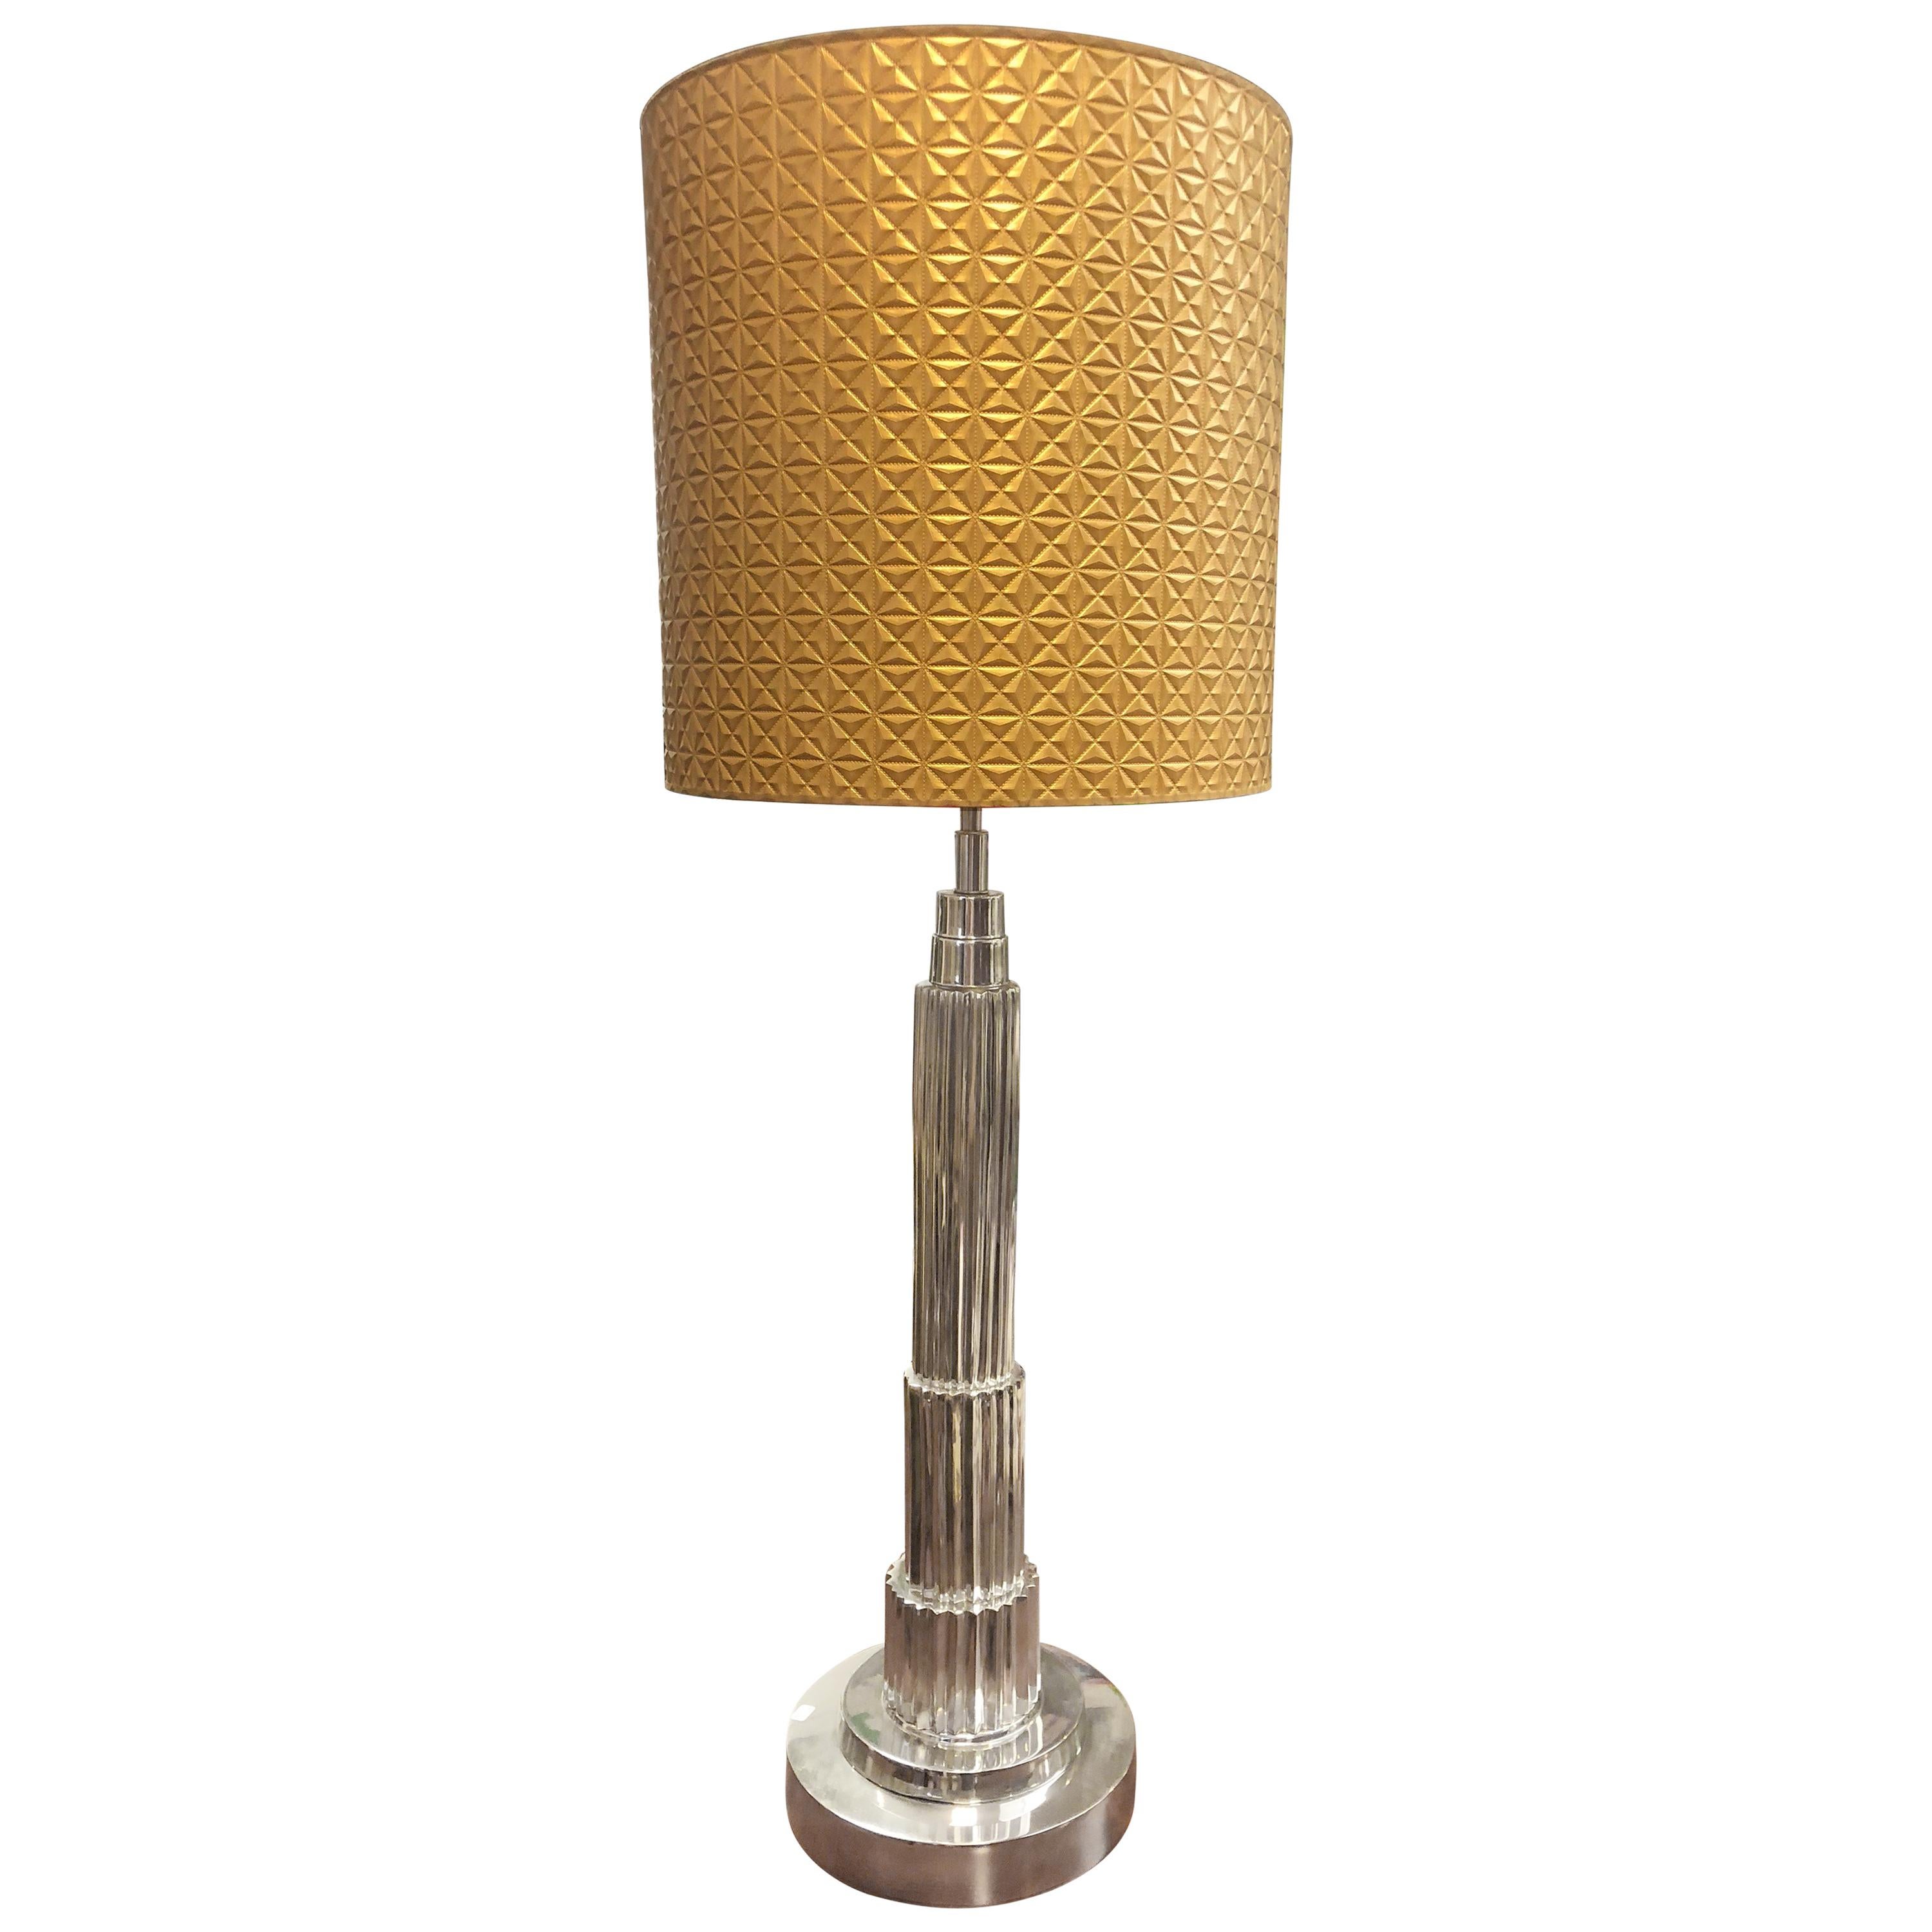 Midcentury French Stylish Table Lamp